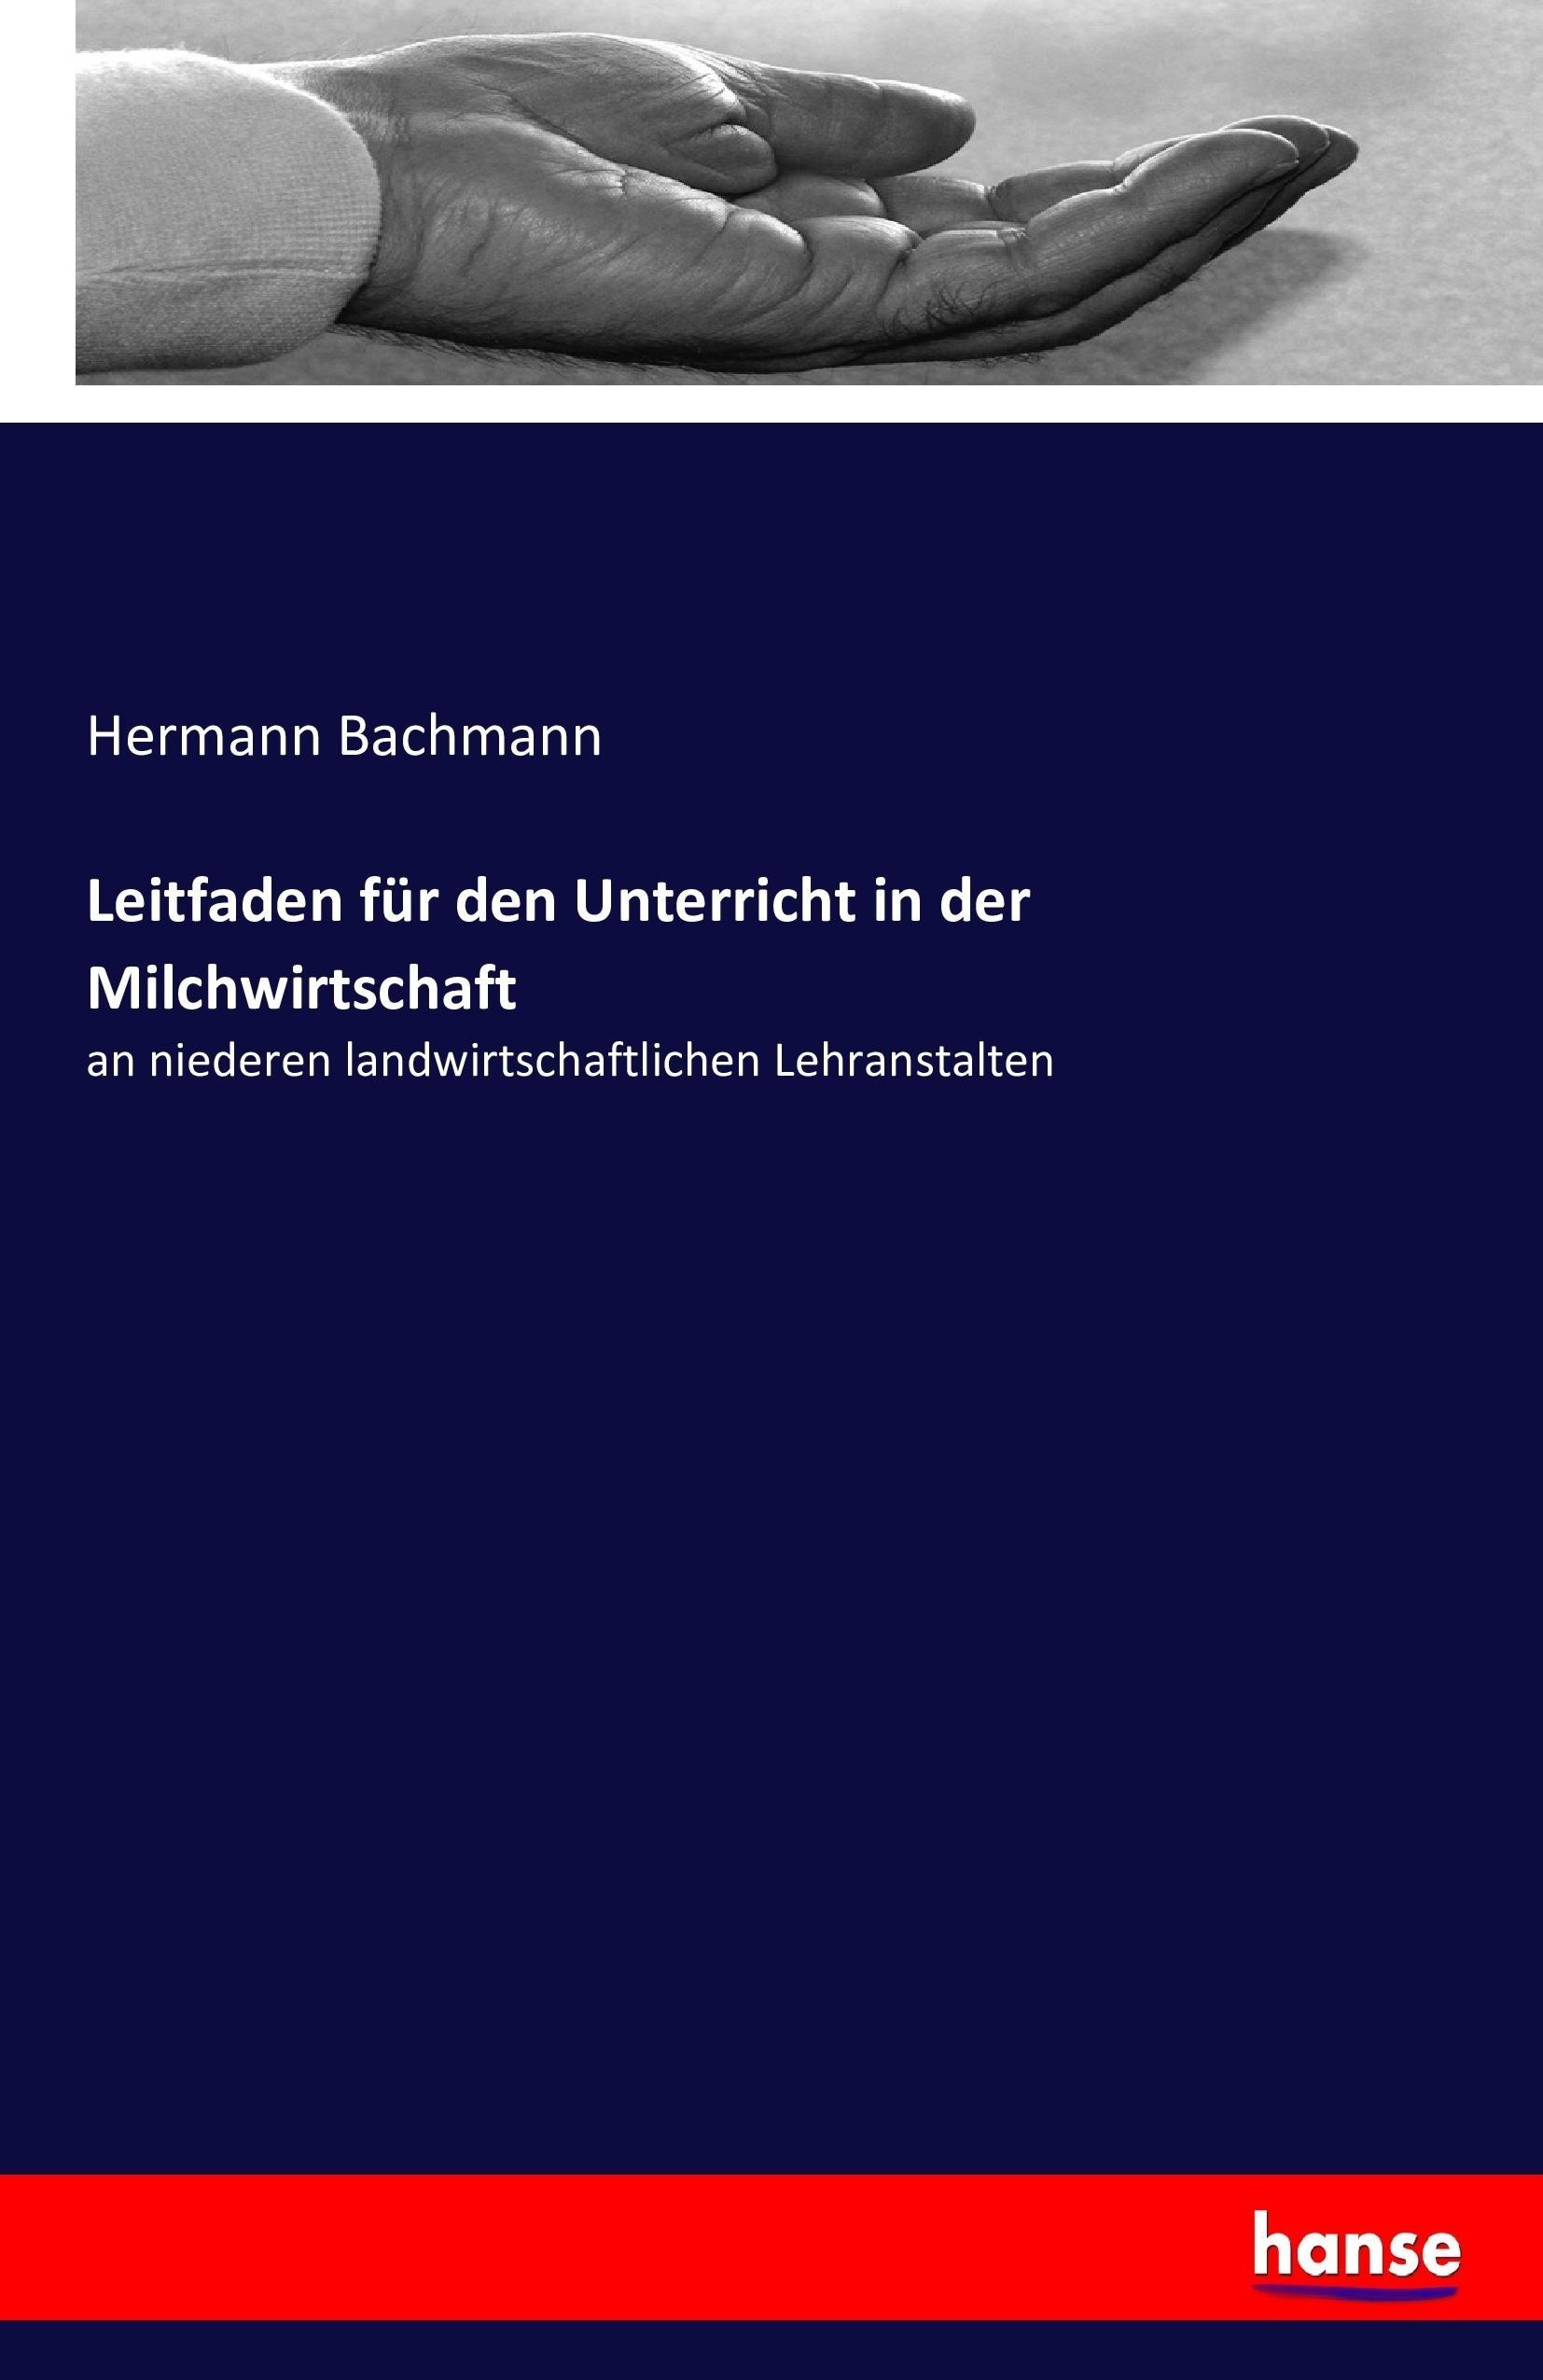 Leitfaden für den Unterricht in der Milchwirtschaft / an niederen landwirtschaftlichen Lehranstalten / Hermann Bachmann / Taschenbuch / Paperback / 76 S. / Deutsch / 2016 / hansebooks - Bachmann, Hermann